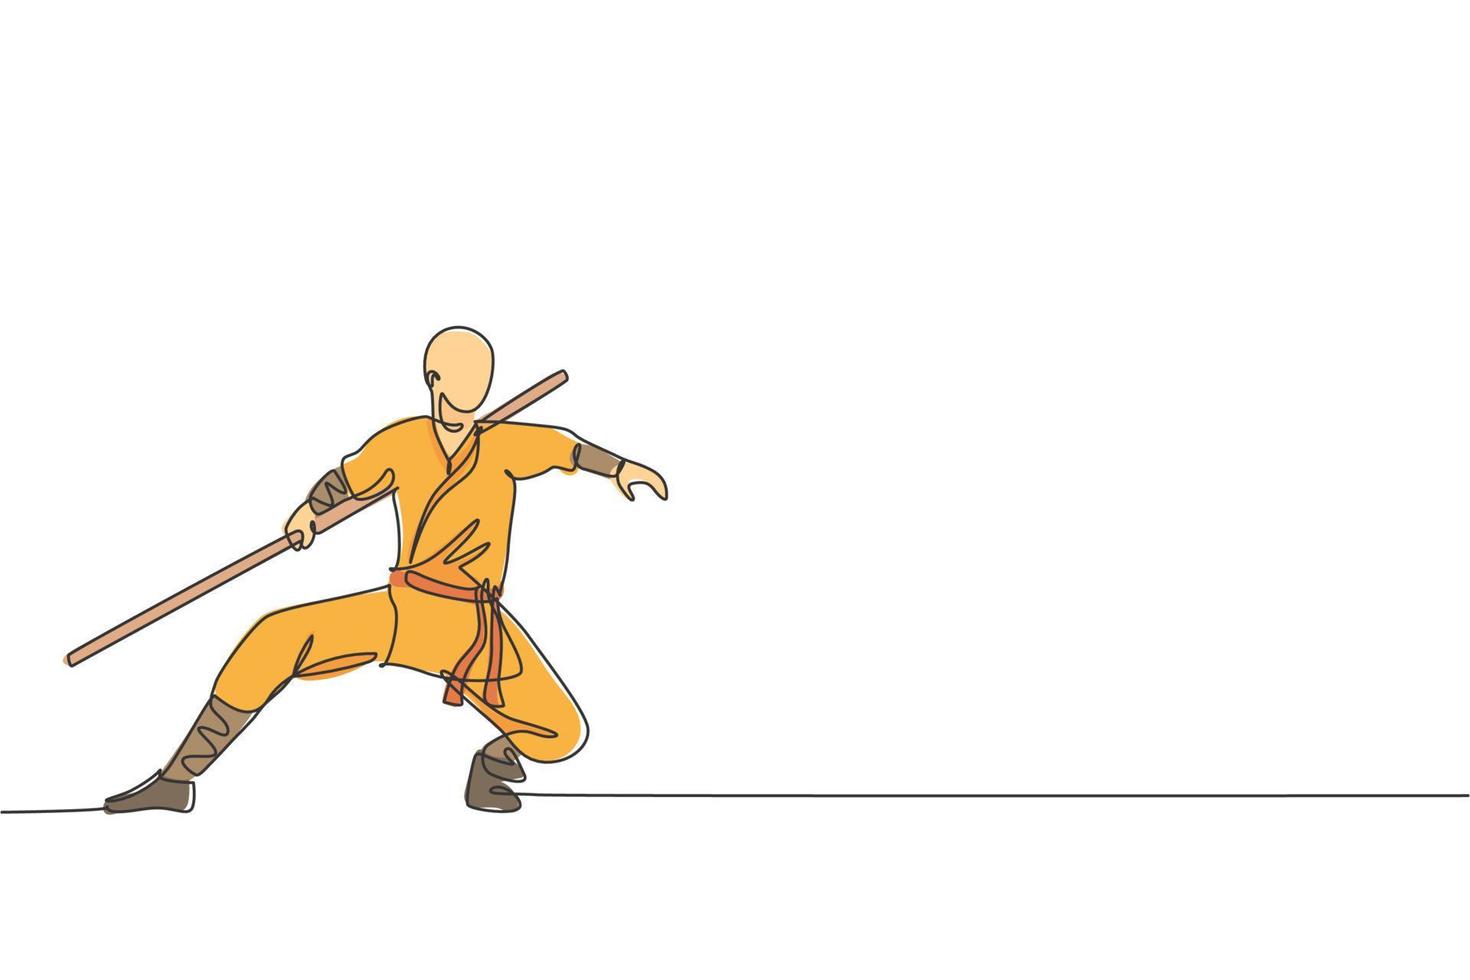 un dibujo de línea continua del joven monje shaolin practica kung fu con palo en el suelo del templo. concepto de deporte de combate chino tradicional. Ilustración de vector de diseño de dibujo de línea única dinámica